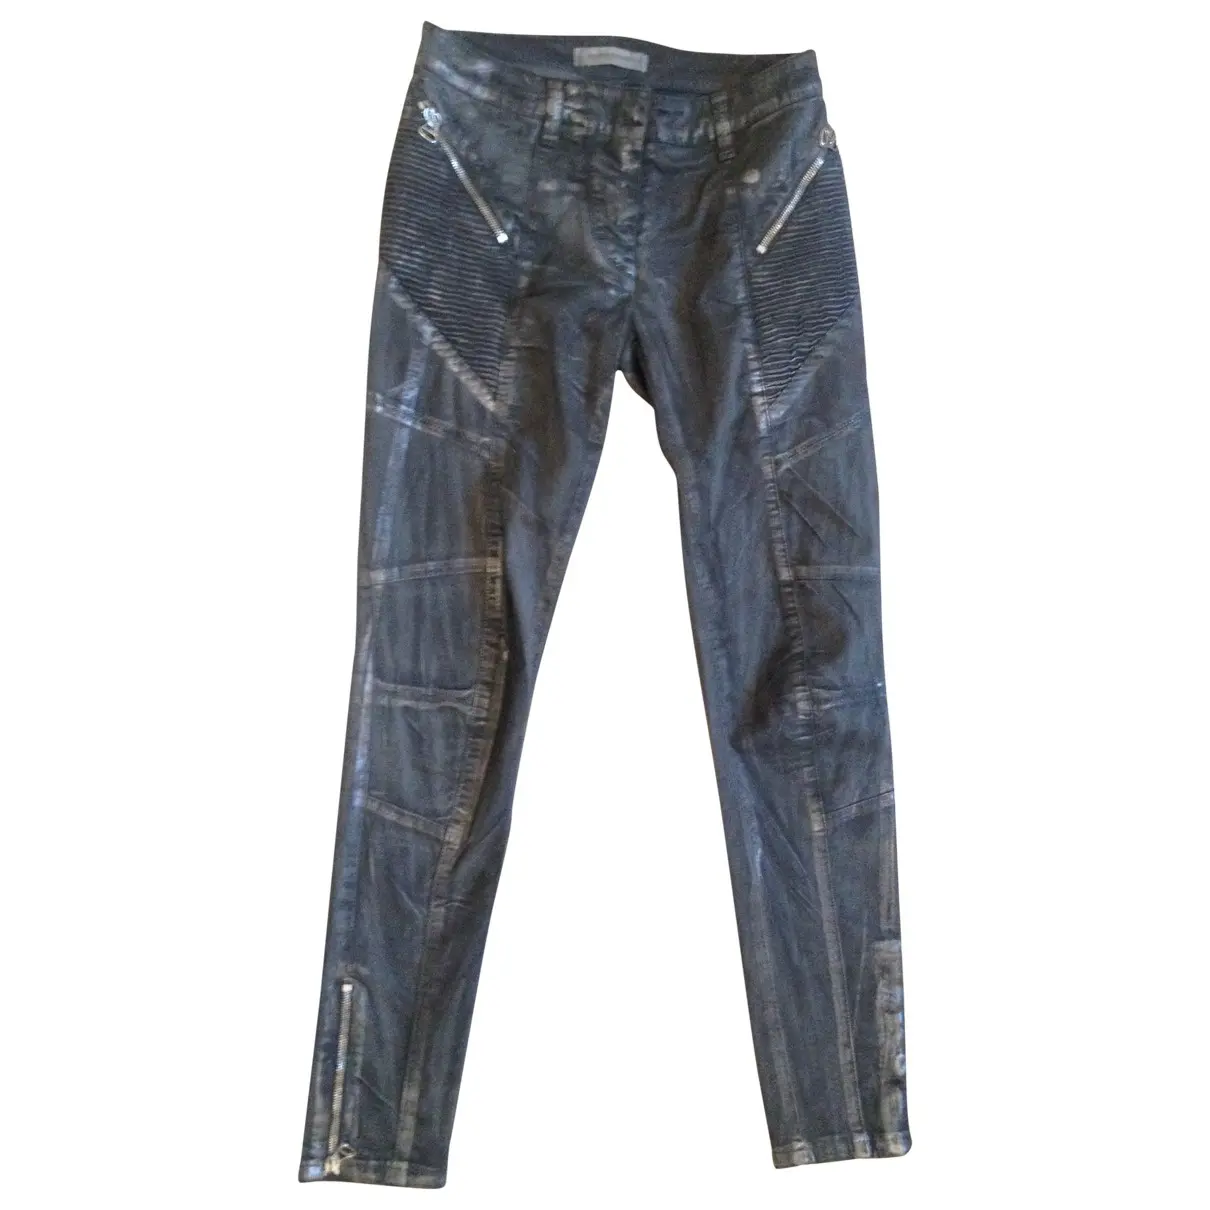 Slim pants Pierre Balmain - Vintage